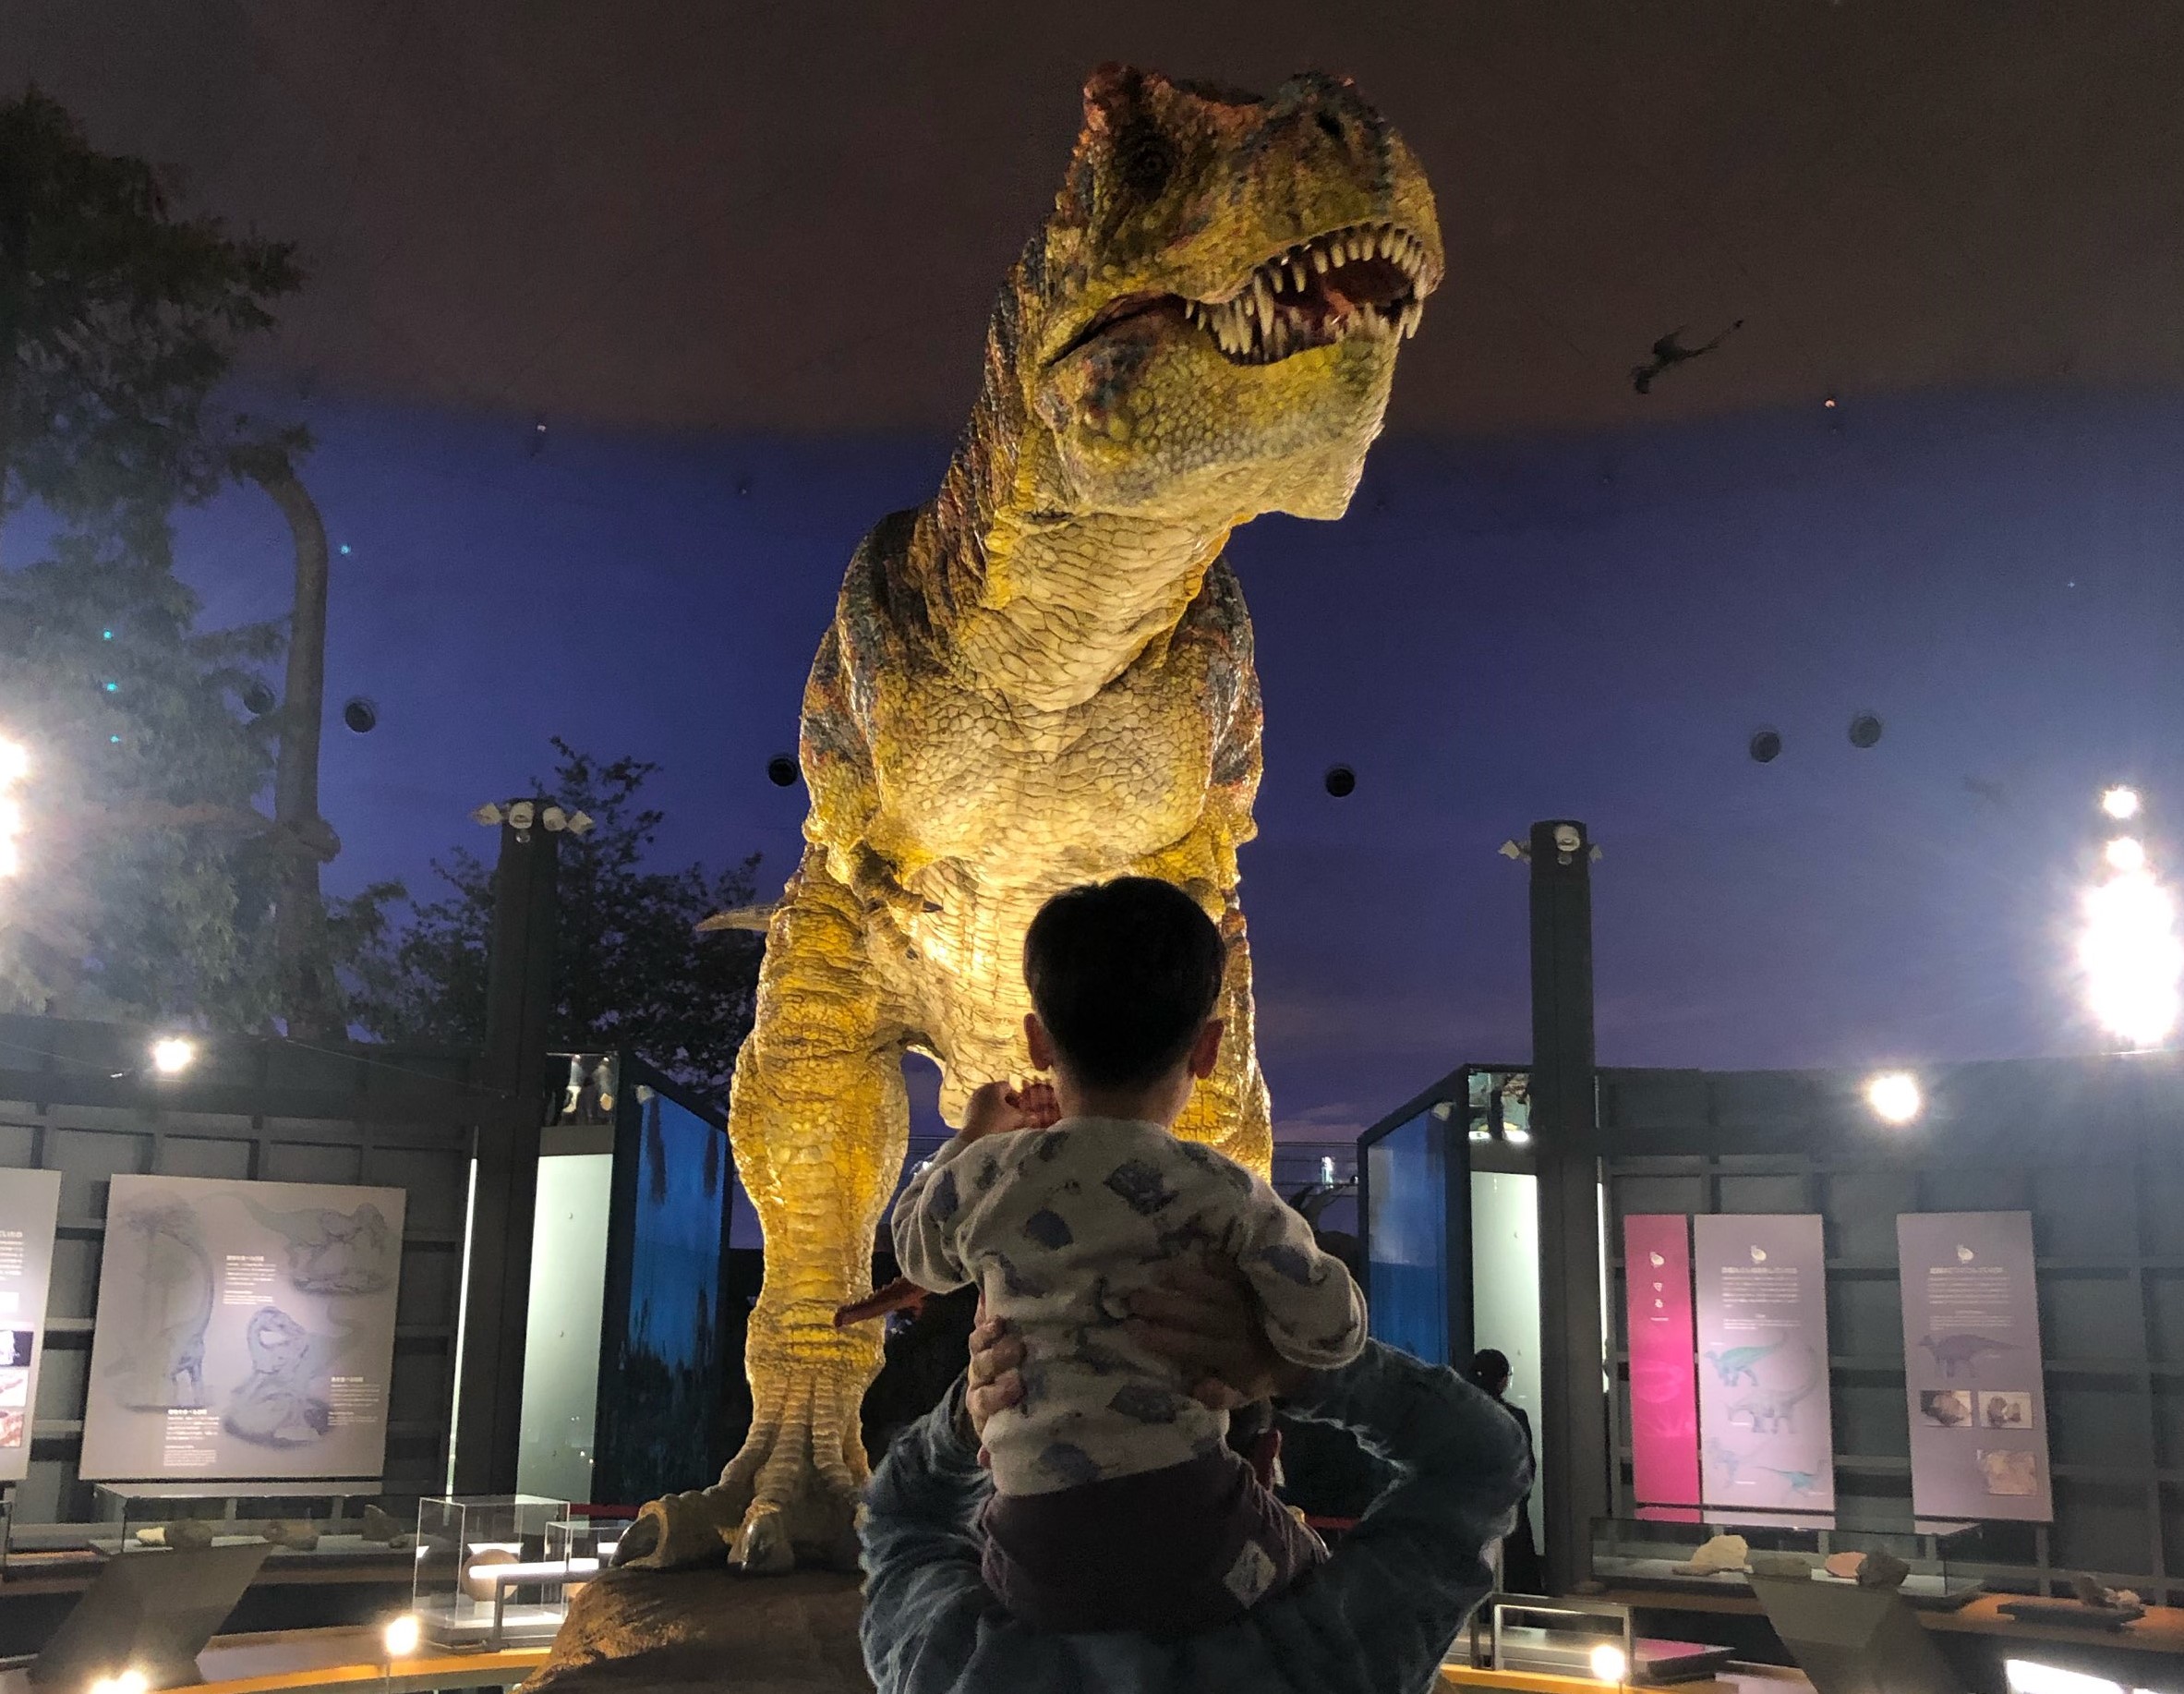 恐竜に会うなら福井へ 2泊3日で巡る子連れ観光モデルコース Catchy